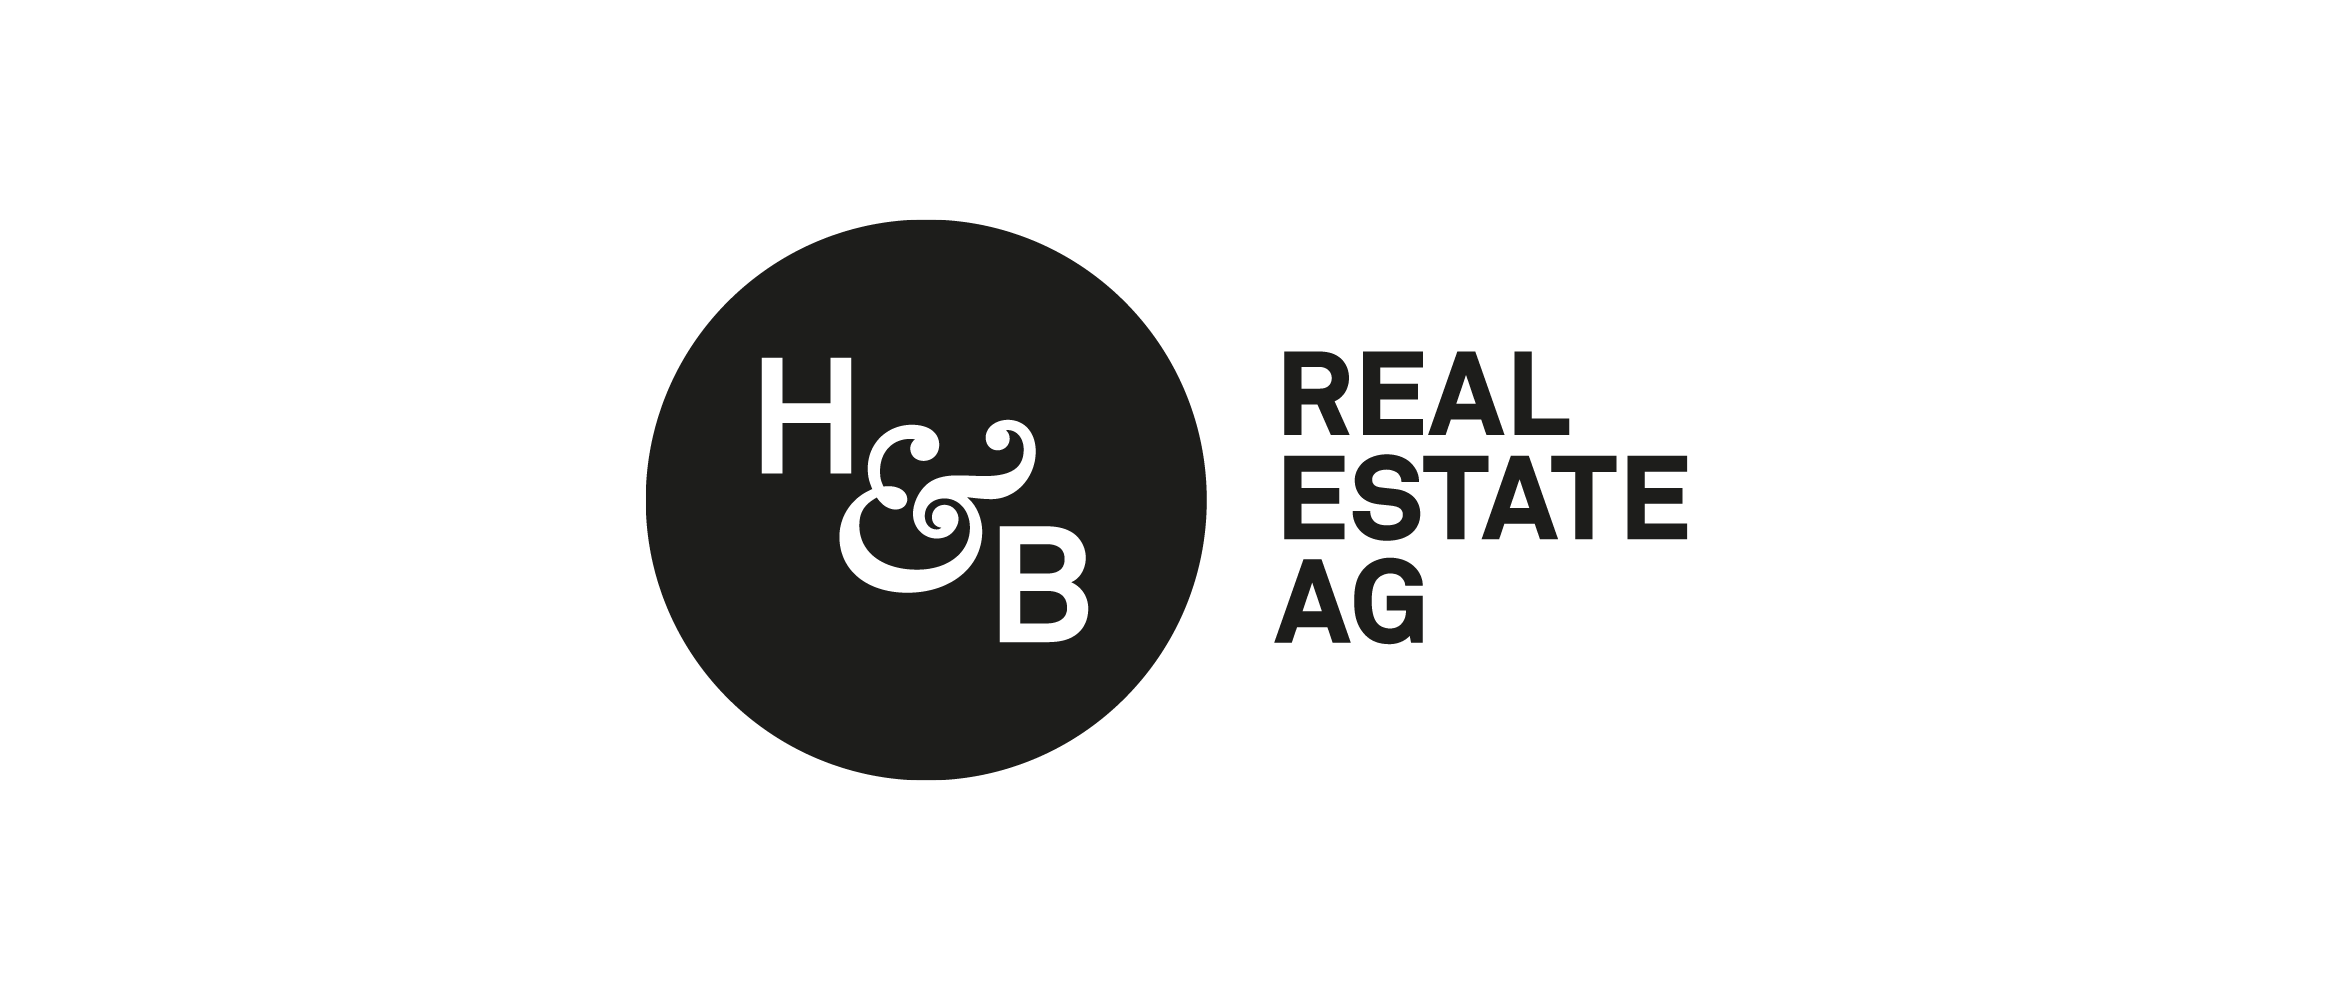 H & B Real Estate AG